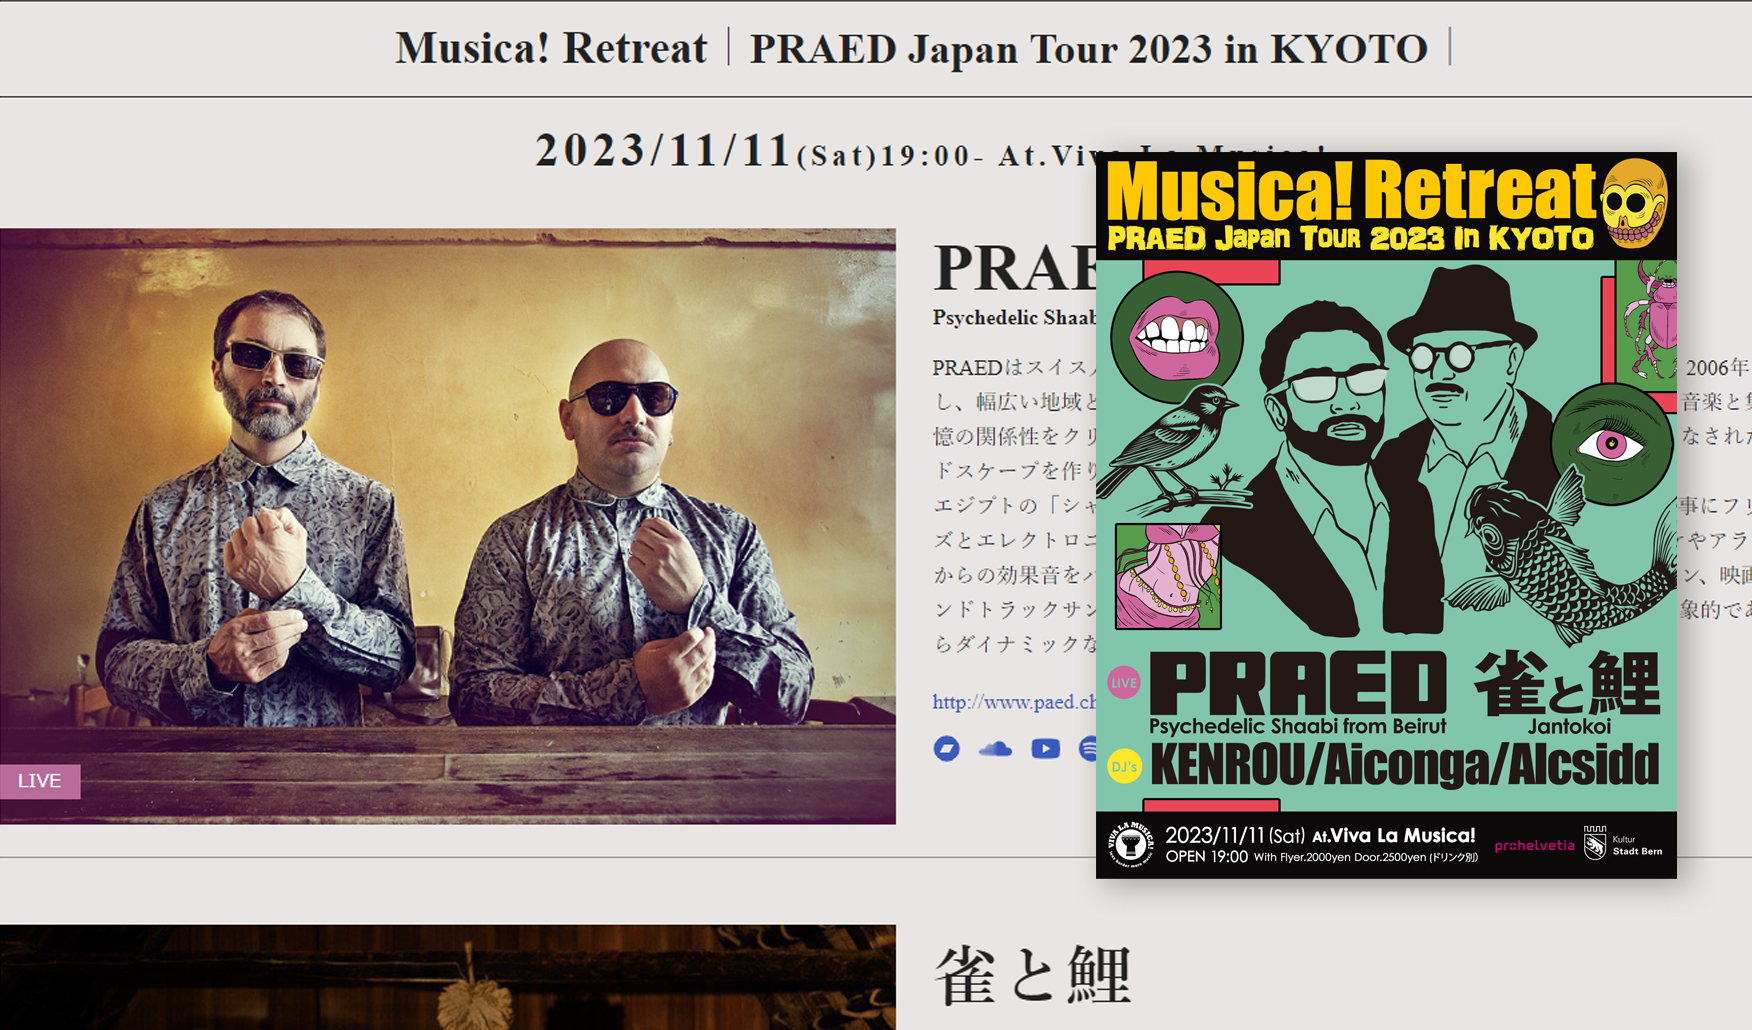 PRAED Japan Tour 2023 in KYOTO